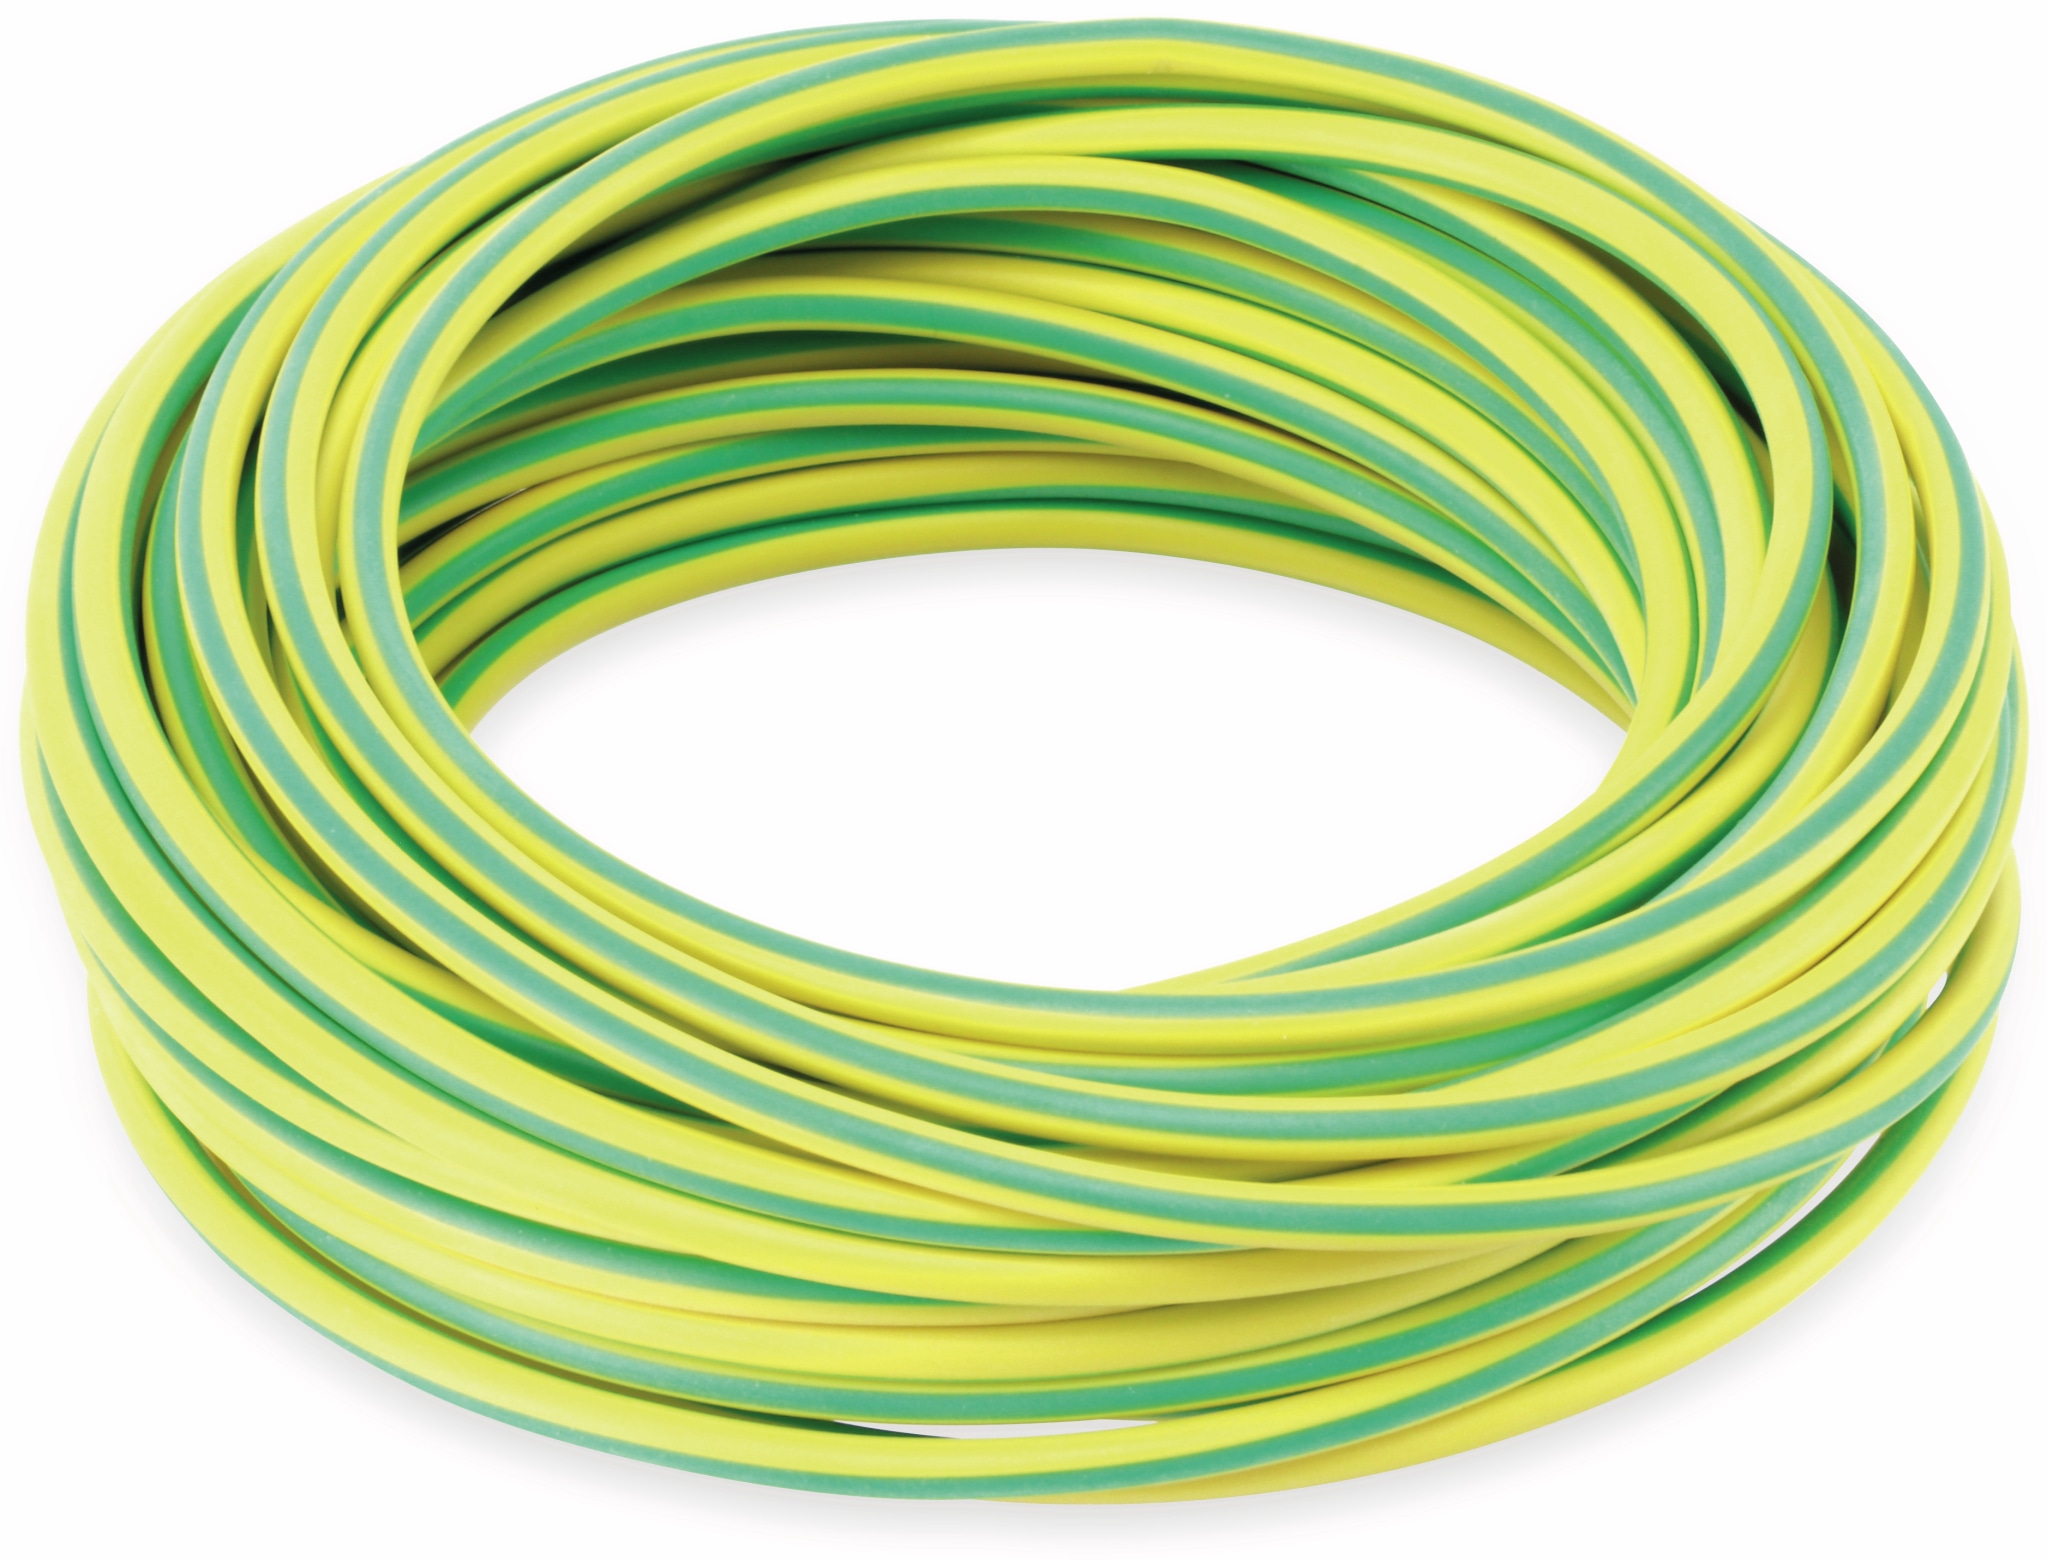 RAUTRONIC Silikon-Litze, 2,5 mm², grün/gelb, 10 m